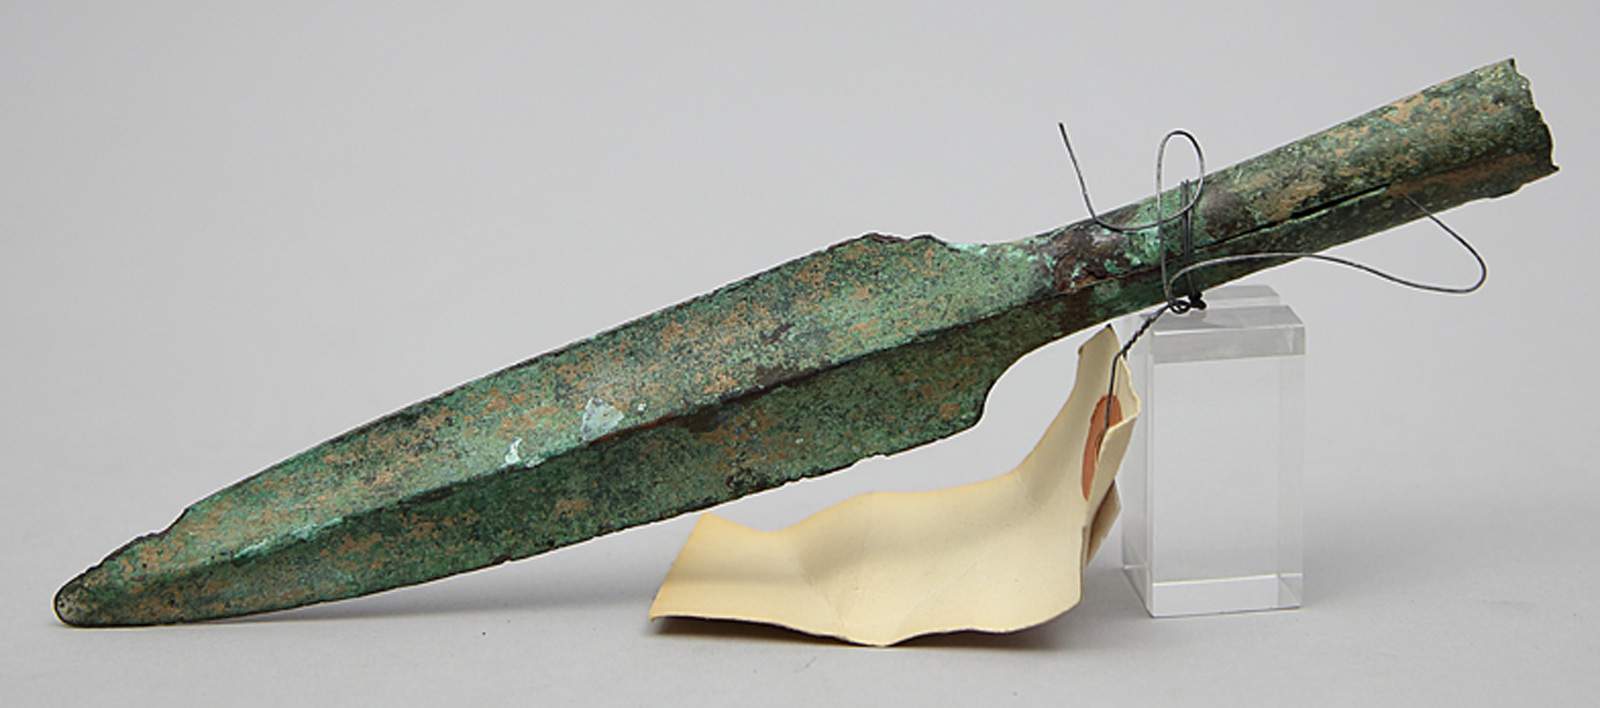 Speerspitze.Bronze mit grüner Patina. Lange, gekehlte Klinge. Korrosionsspuren, Best. Fundort und